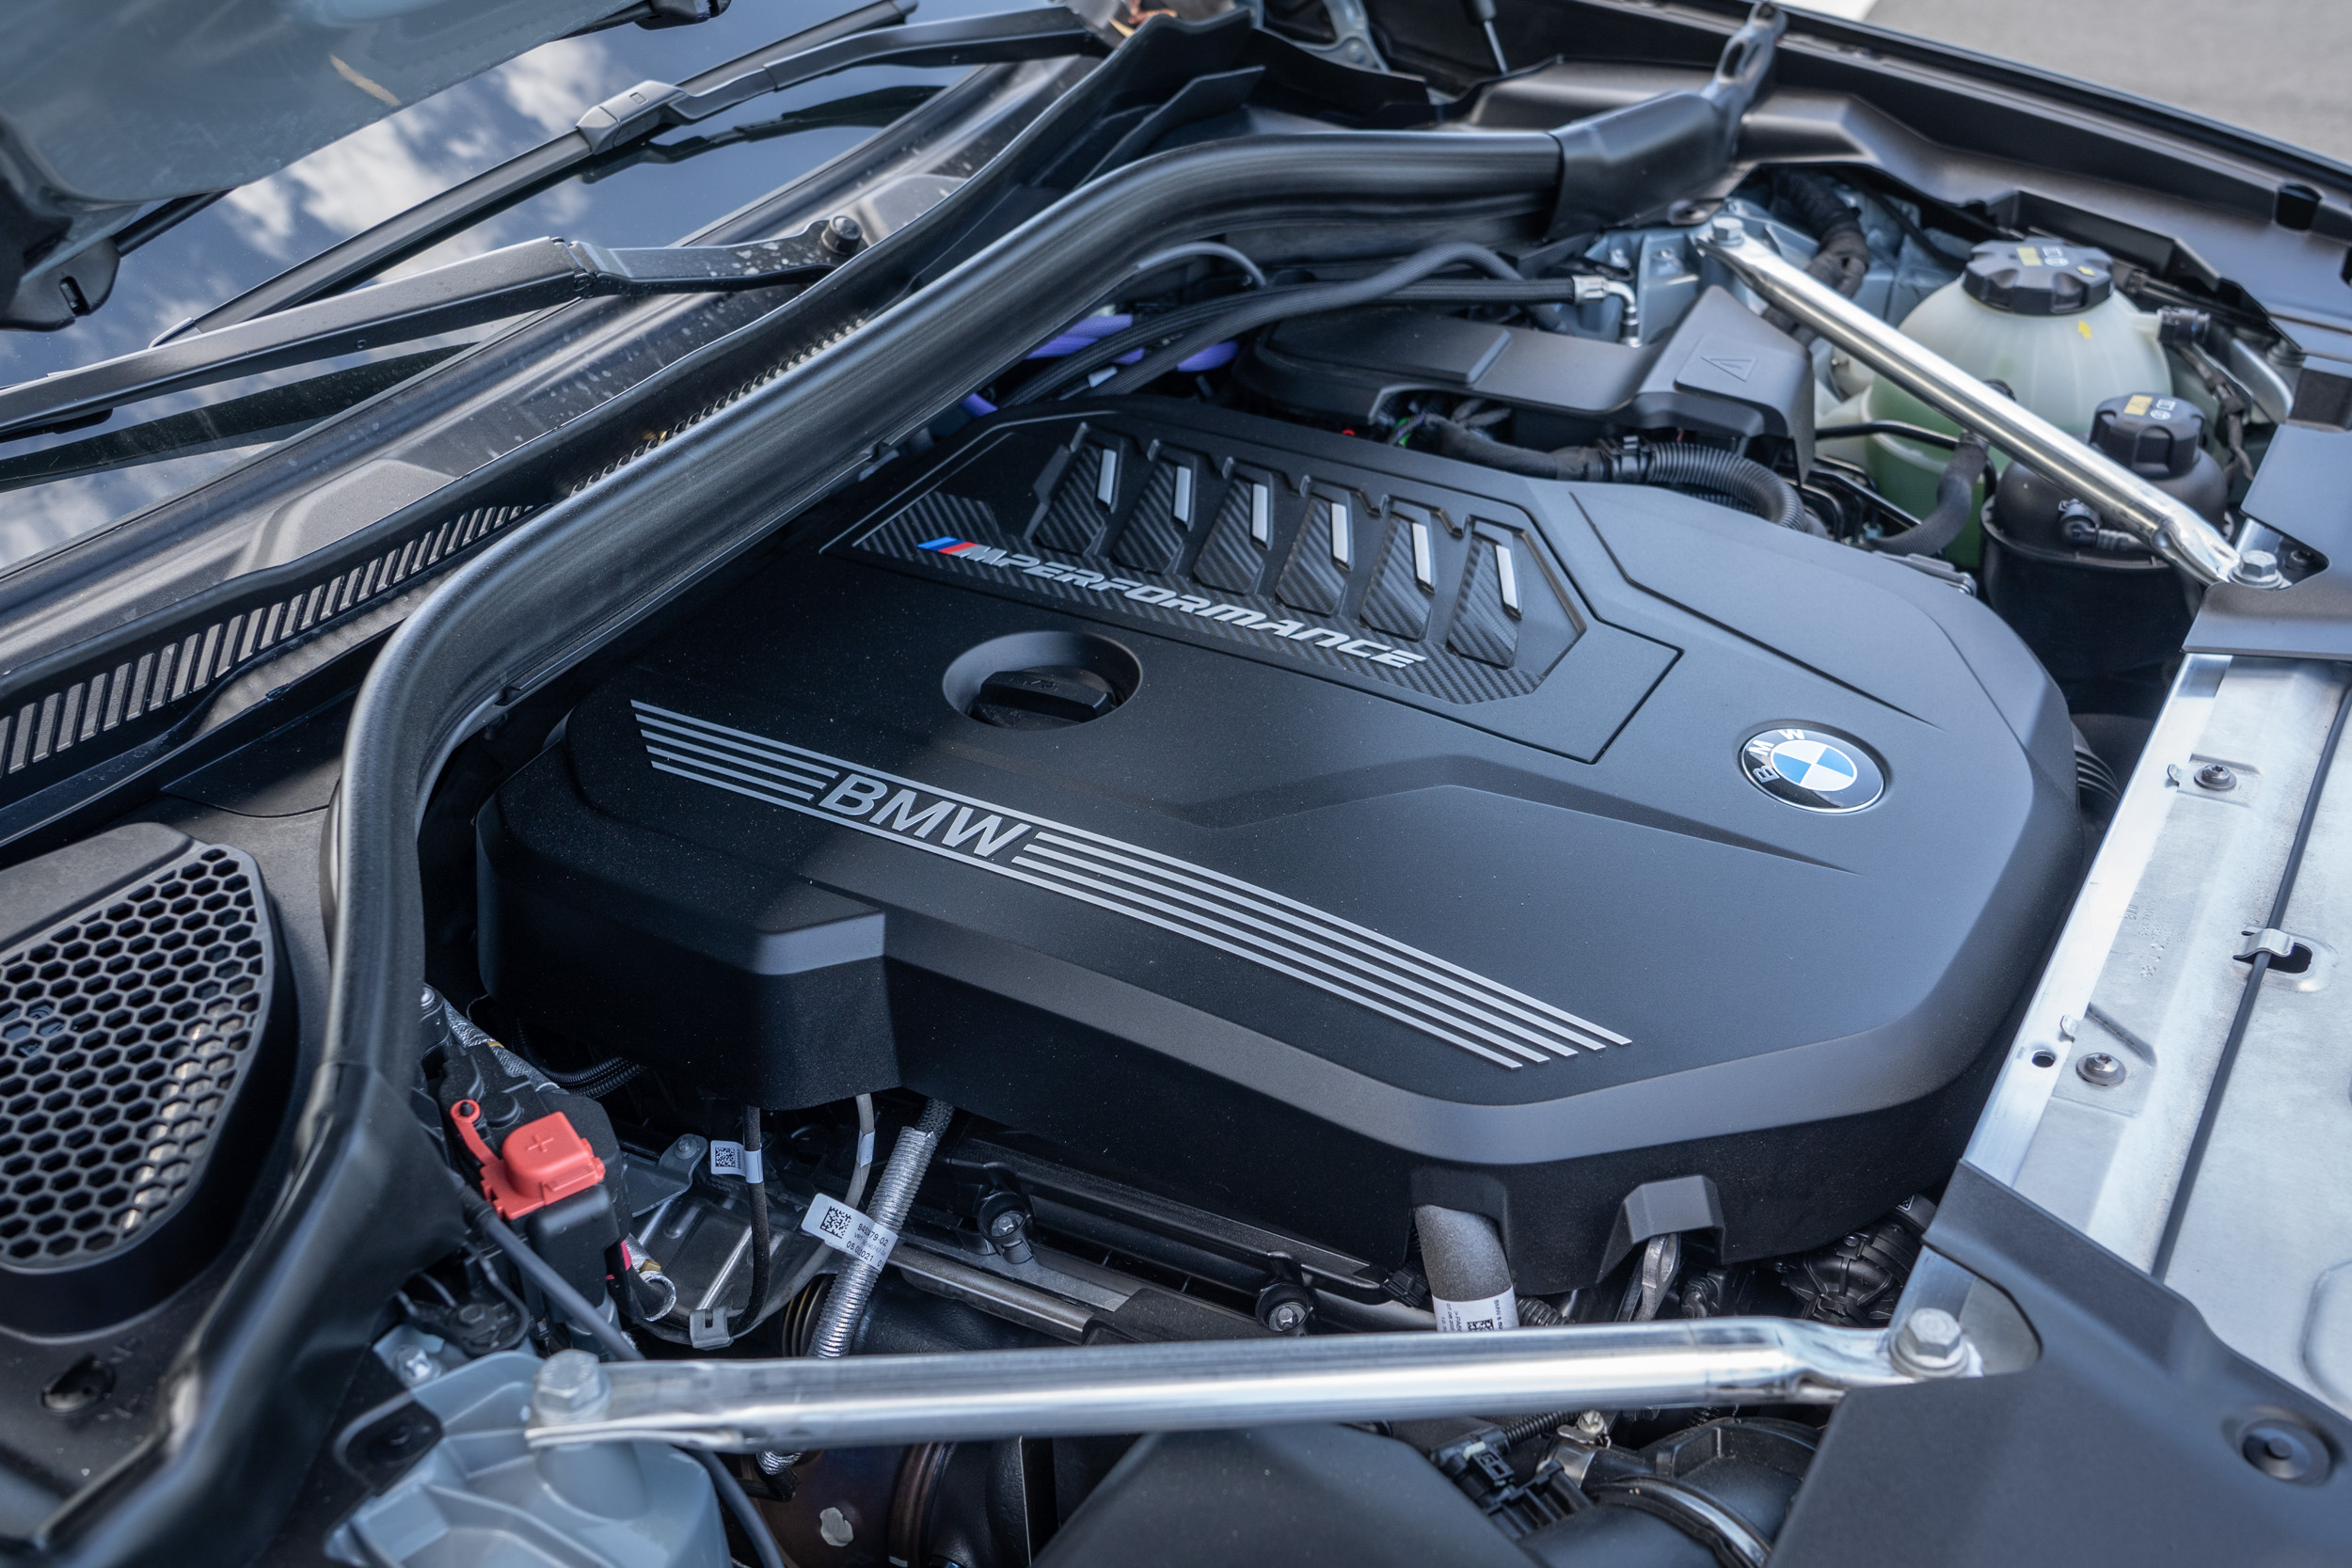 搭載 3.0 升 TwonPower Turbo 直列六缸汽油引擎，具備 360hp/5200rpm 最大馬力與 500Nm/1900rpm 最大扭力輸出。